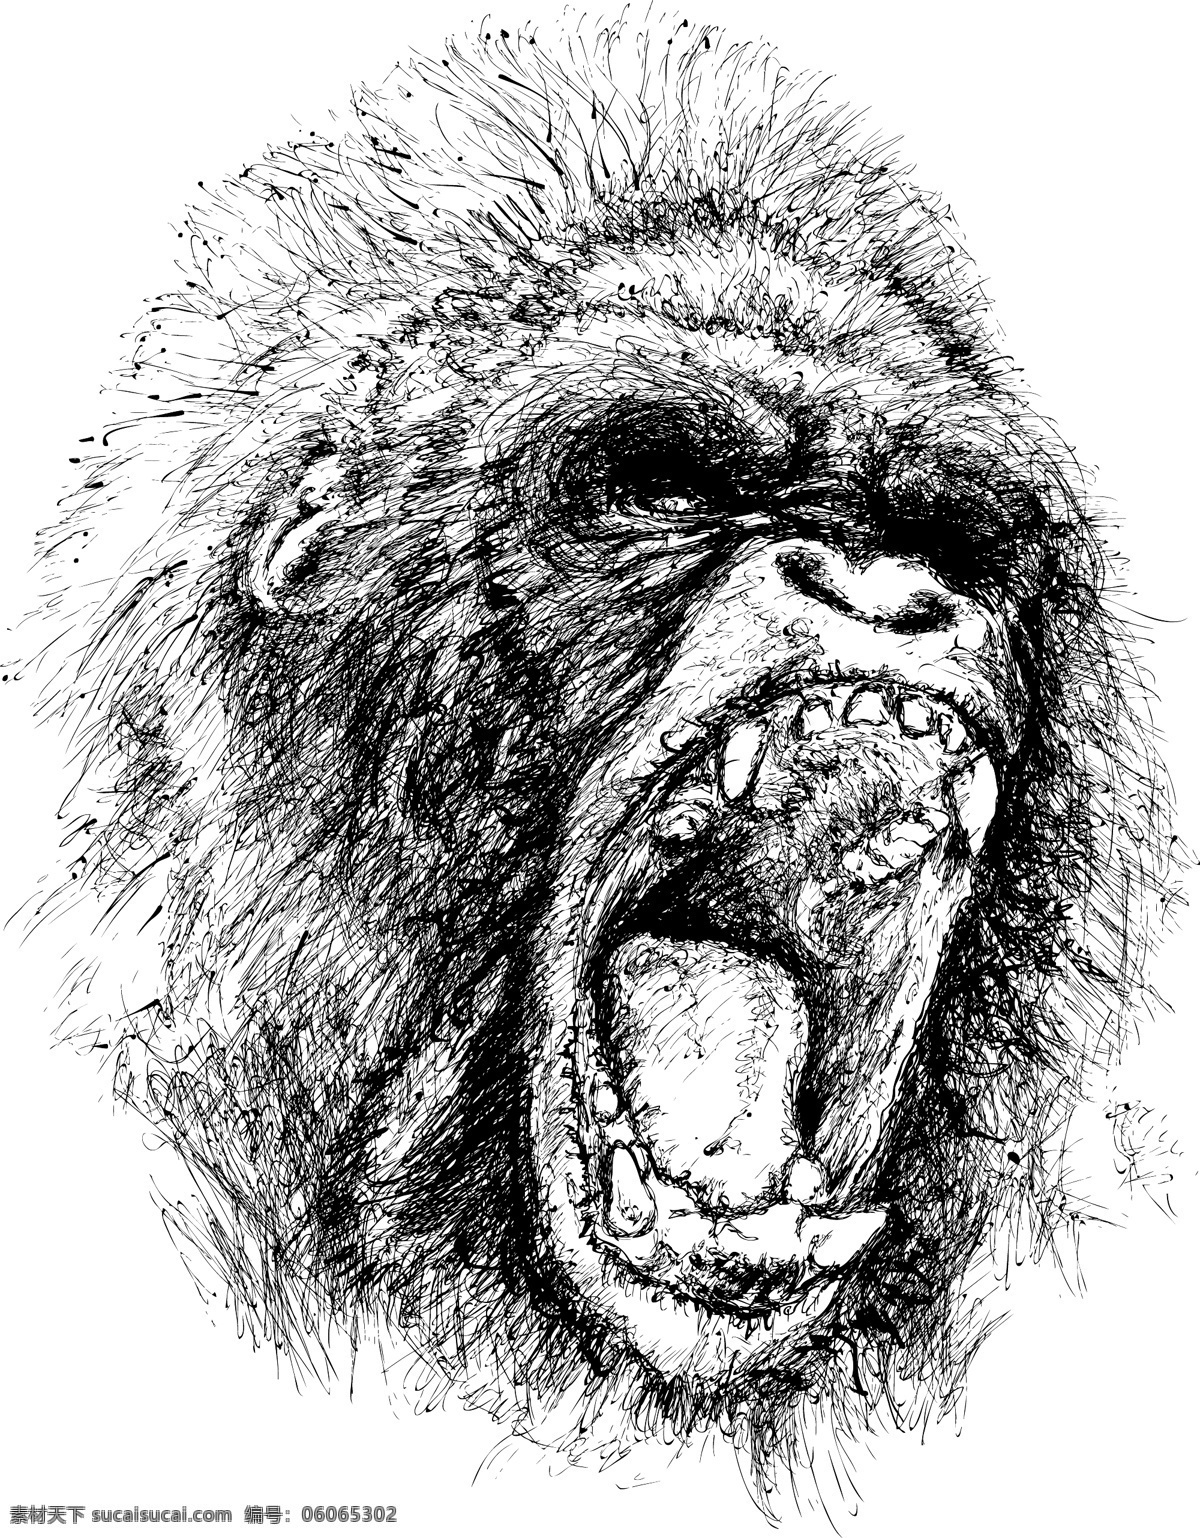 超酷大猩猩 金刚猩猩 金刚 大猩猩 超酷 头像 刺青 纹身 平面素材